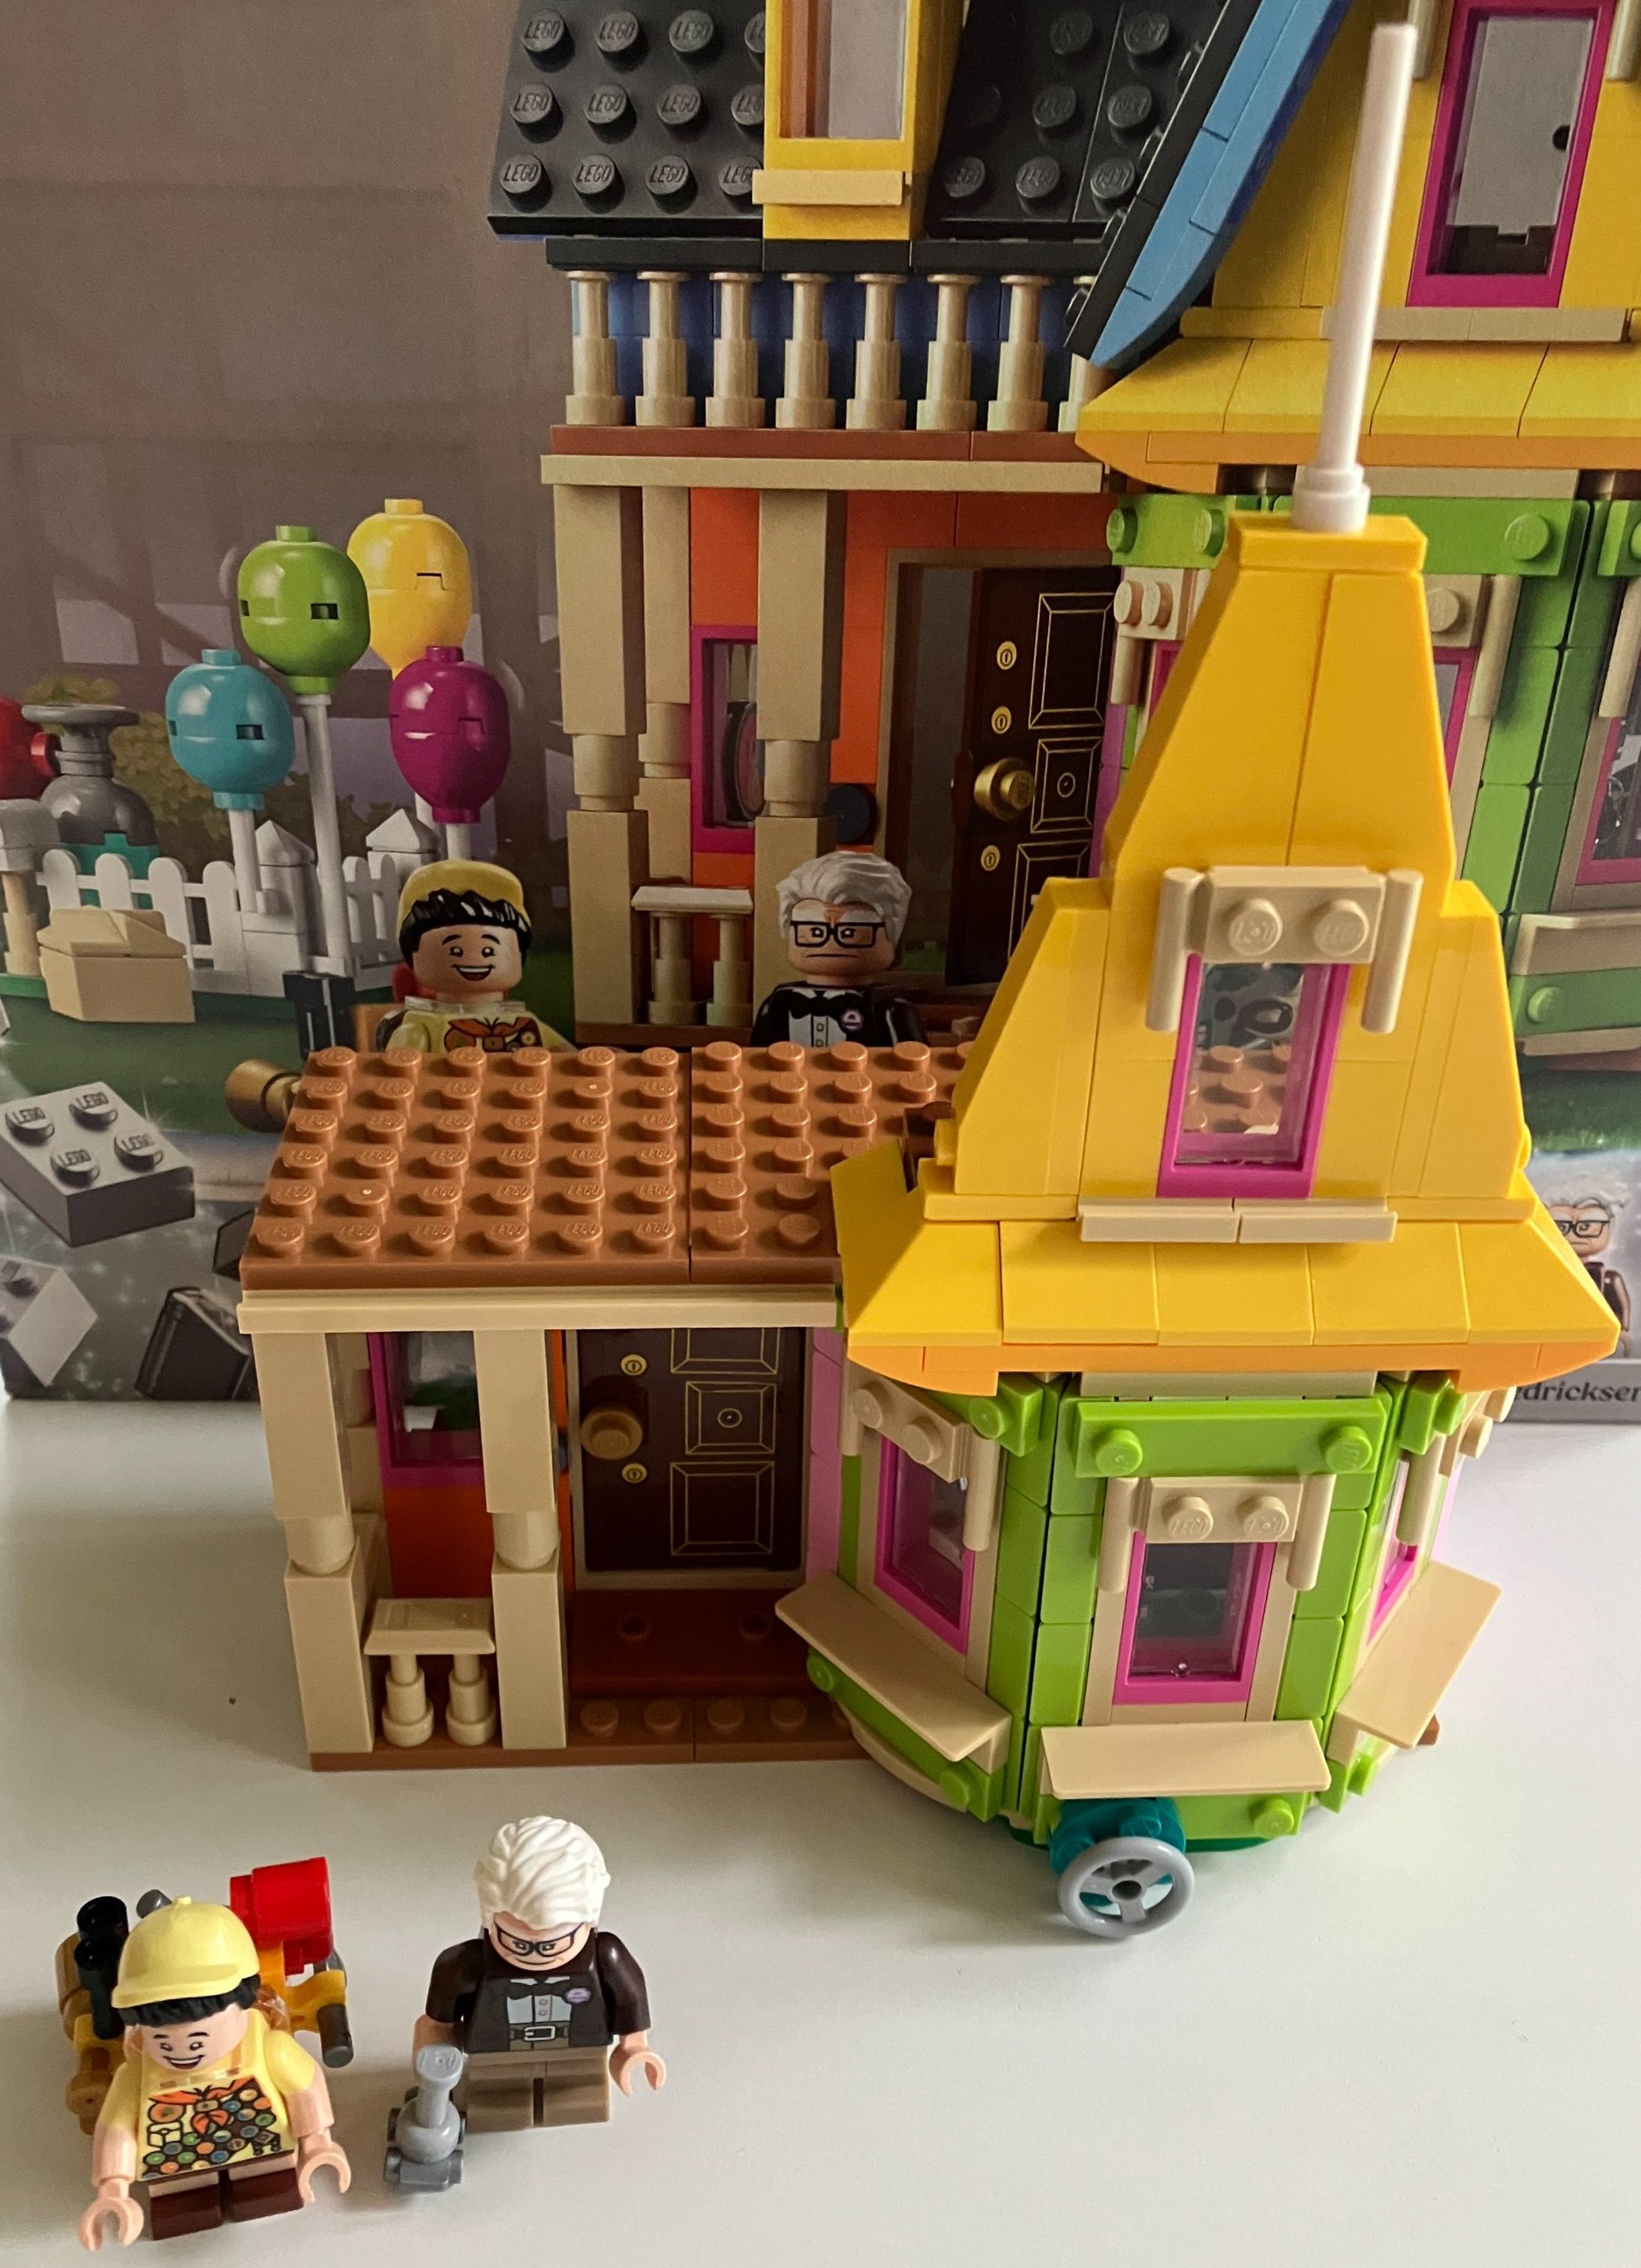 LEGO IDEAS - UP House Disney Pixar